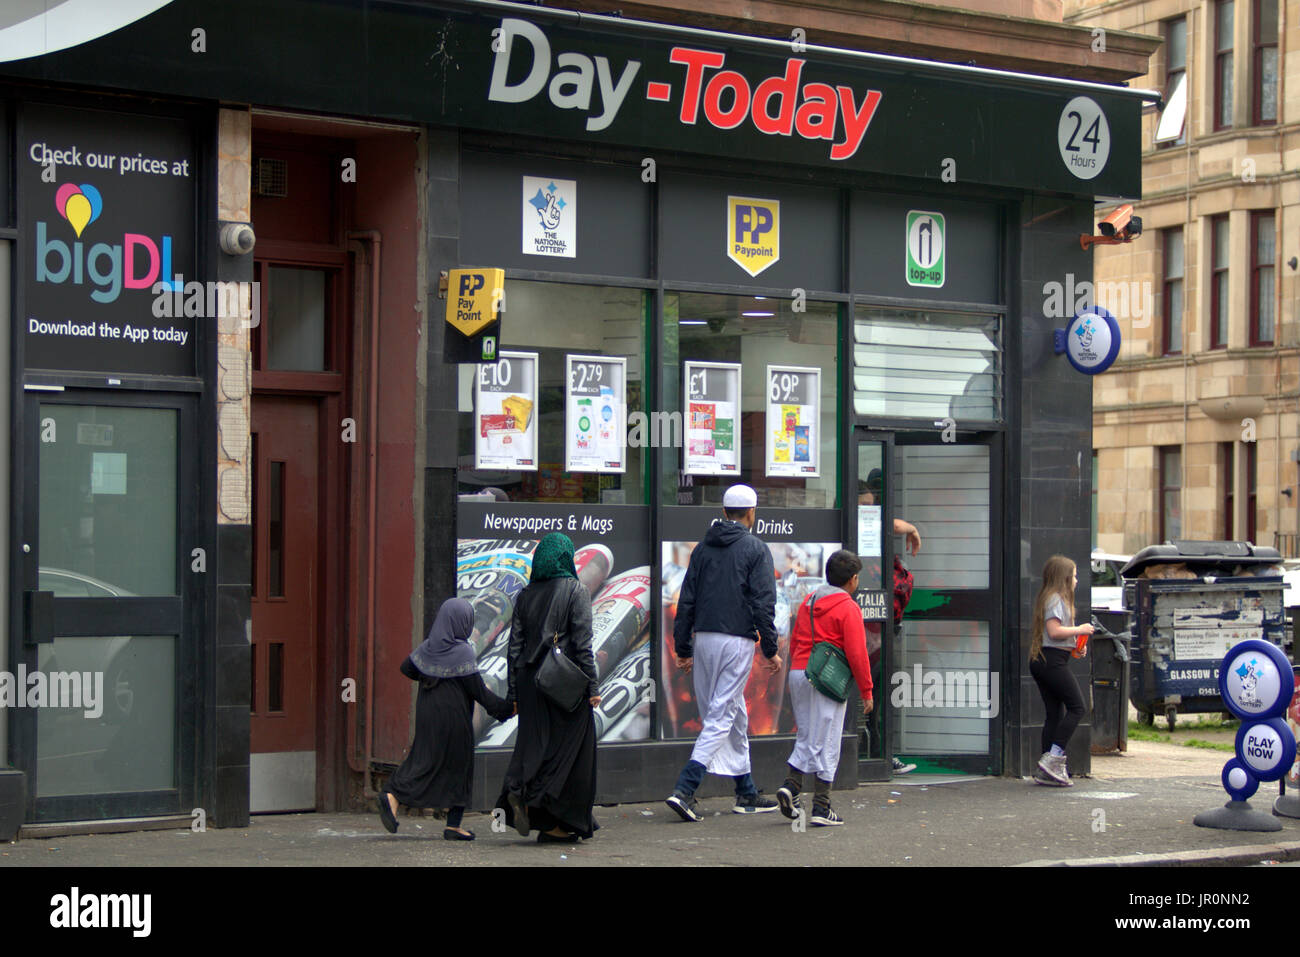 Asiatische Familie Flüchtling gekleidet Hijab Schal auf der Straße in Großbritannien alltägliche Szene Govanhill Glasgow Stockfoto